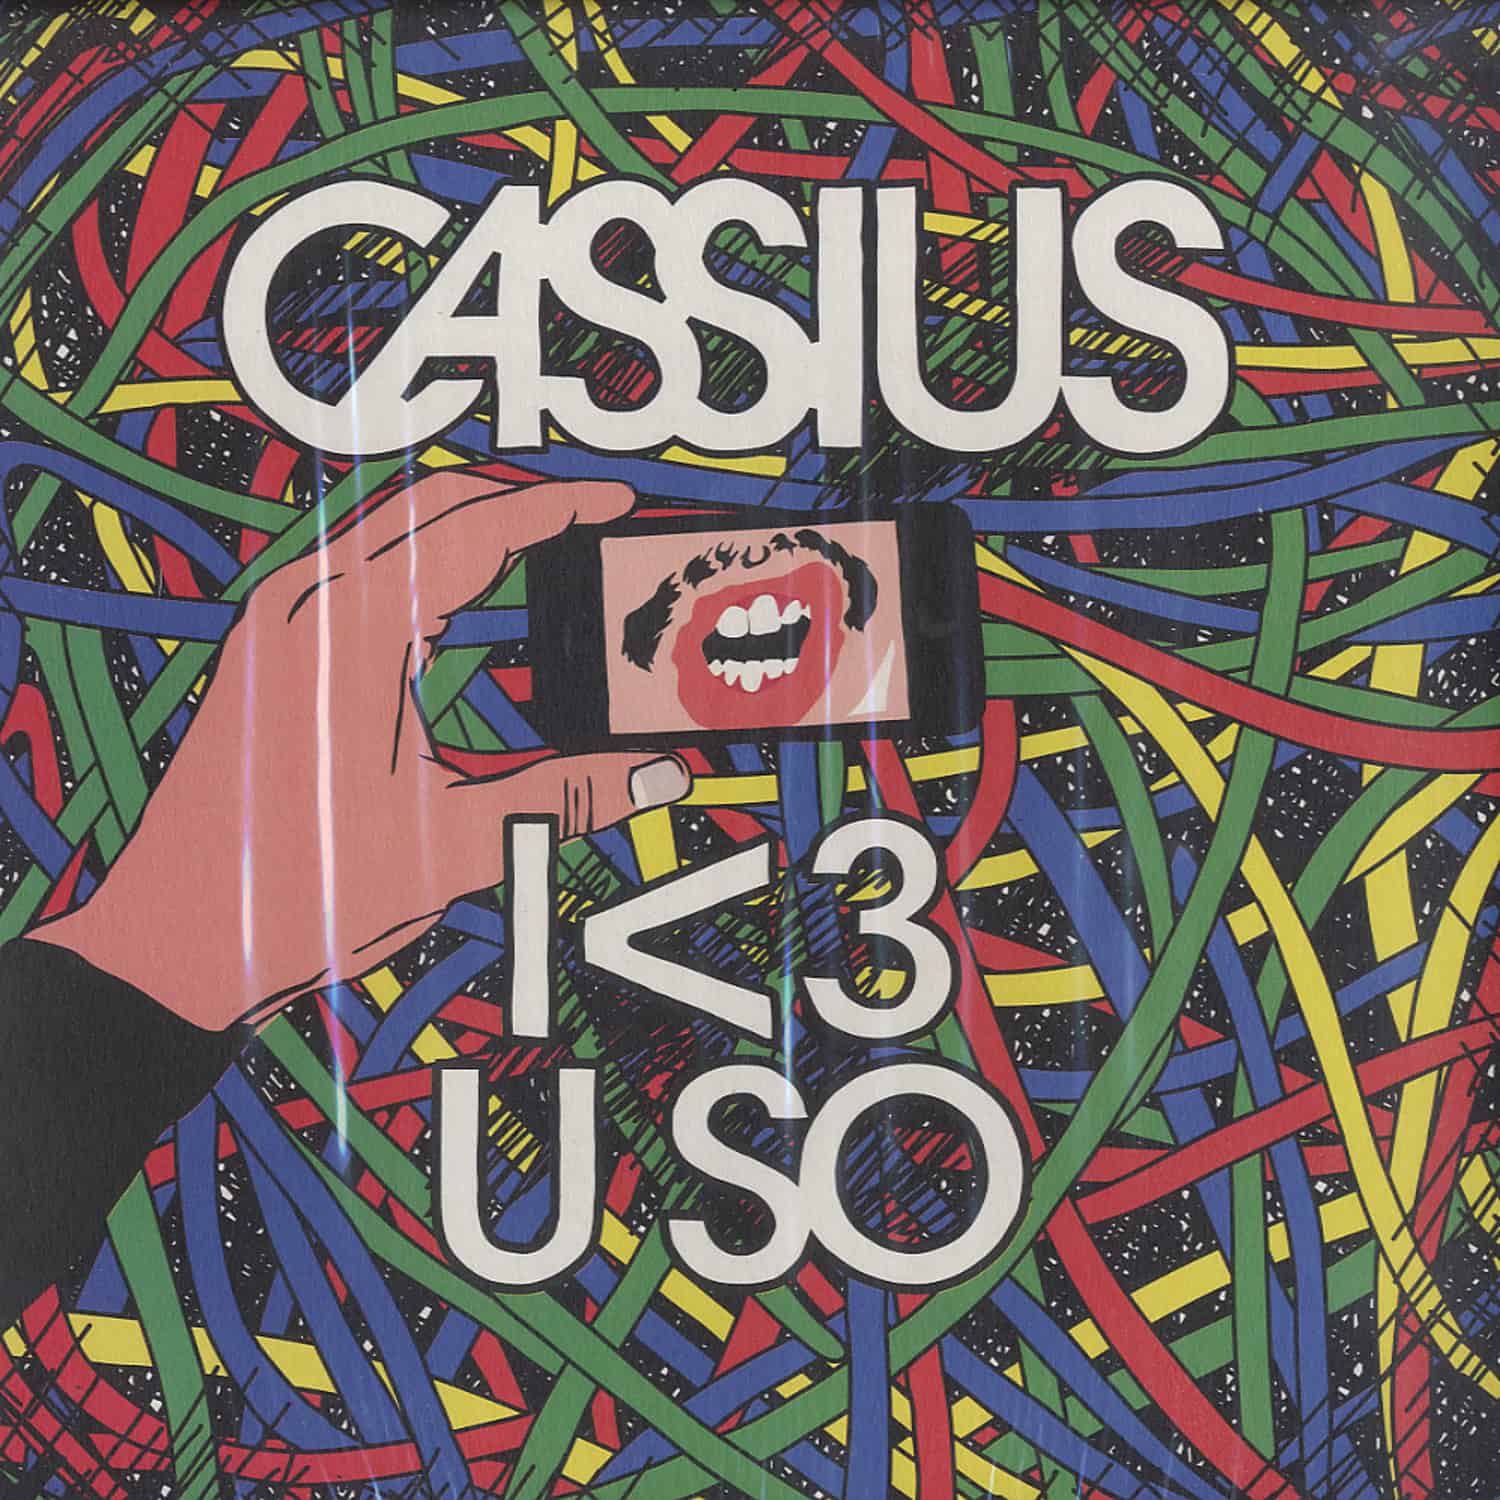 Cassius - I <3 U SO REMIXES